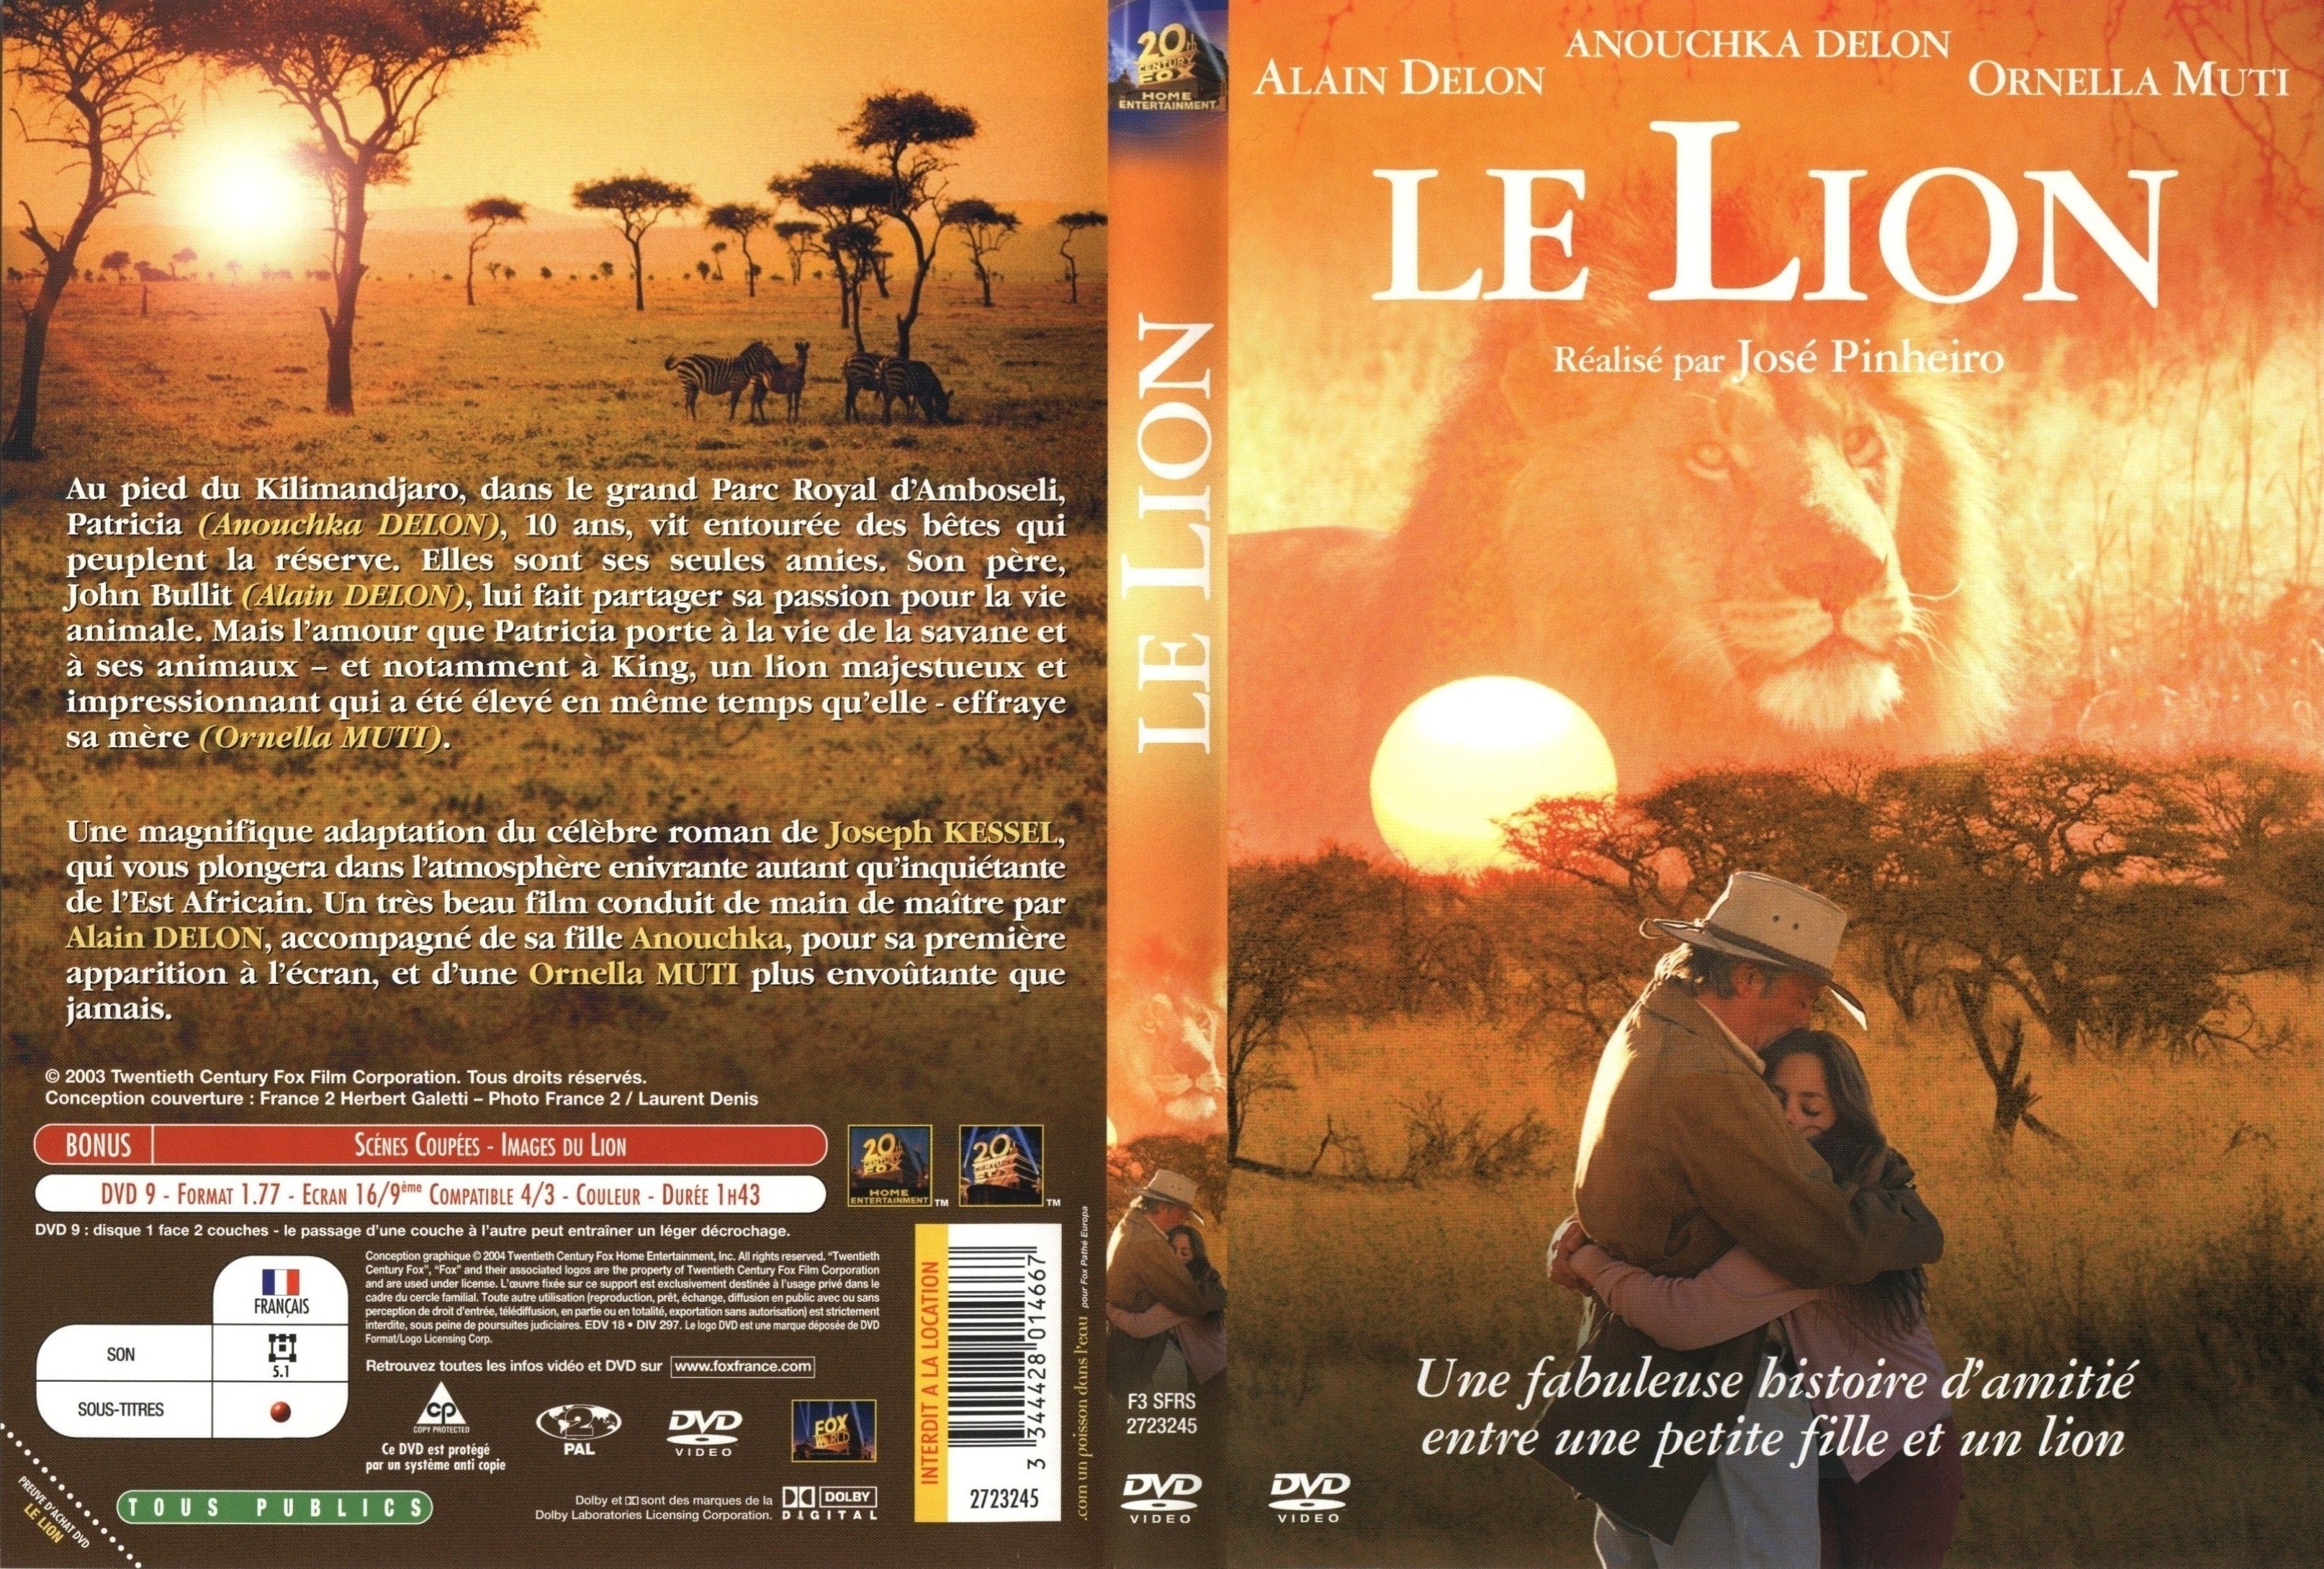 Jaquette DVD Le lion